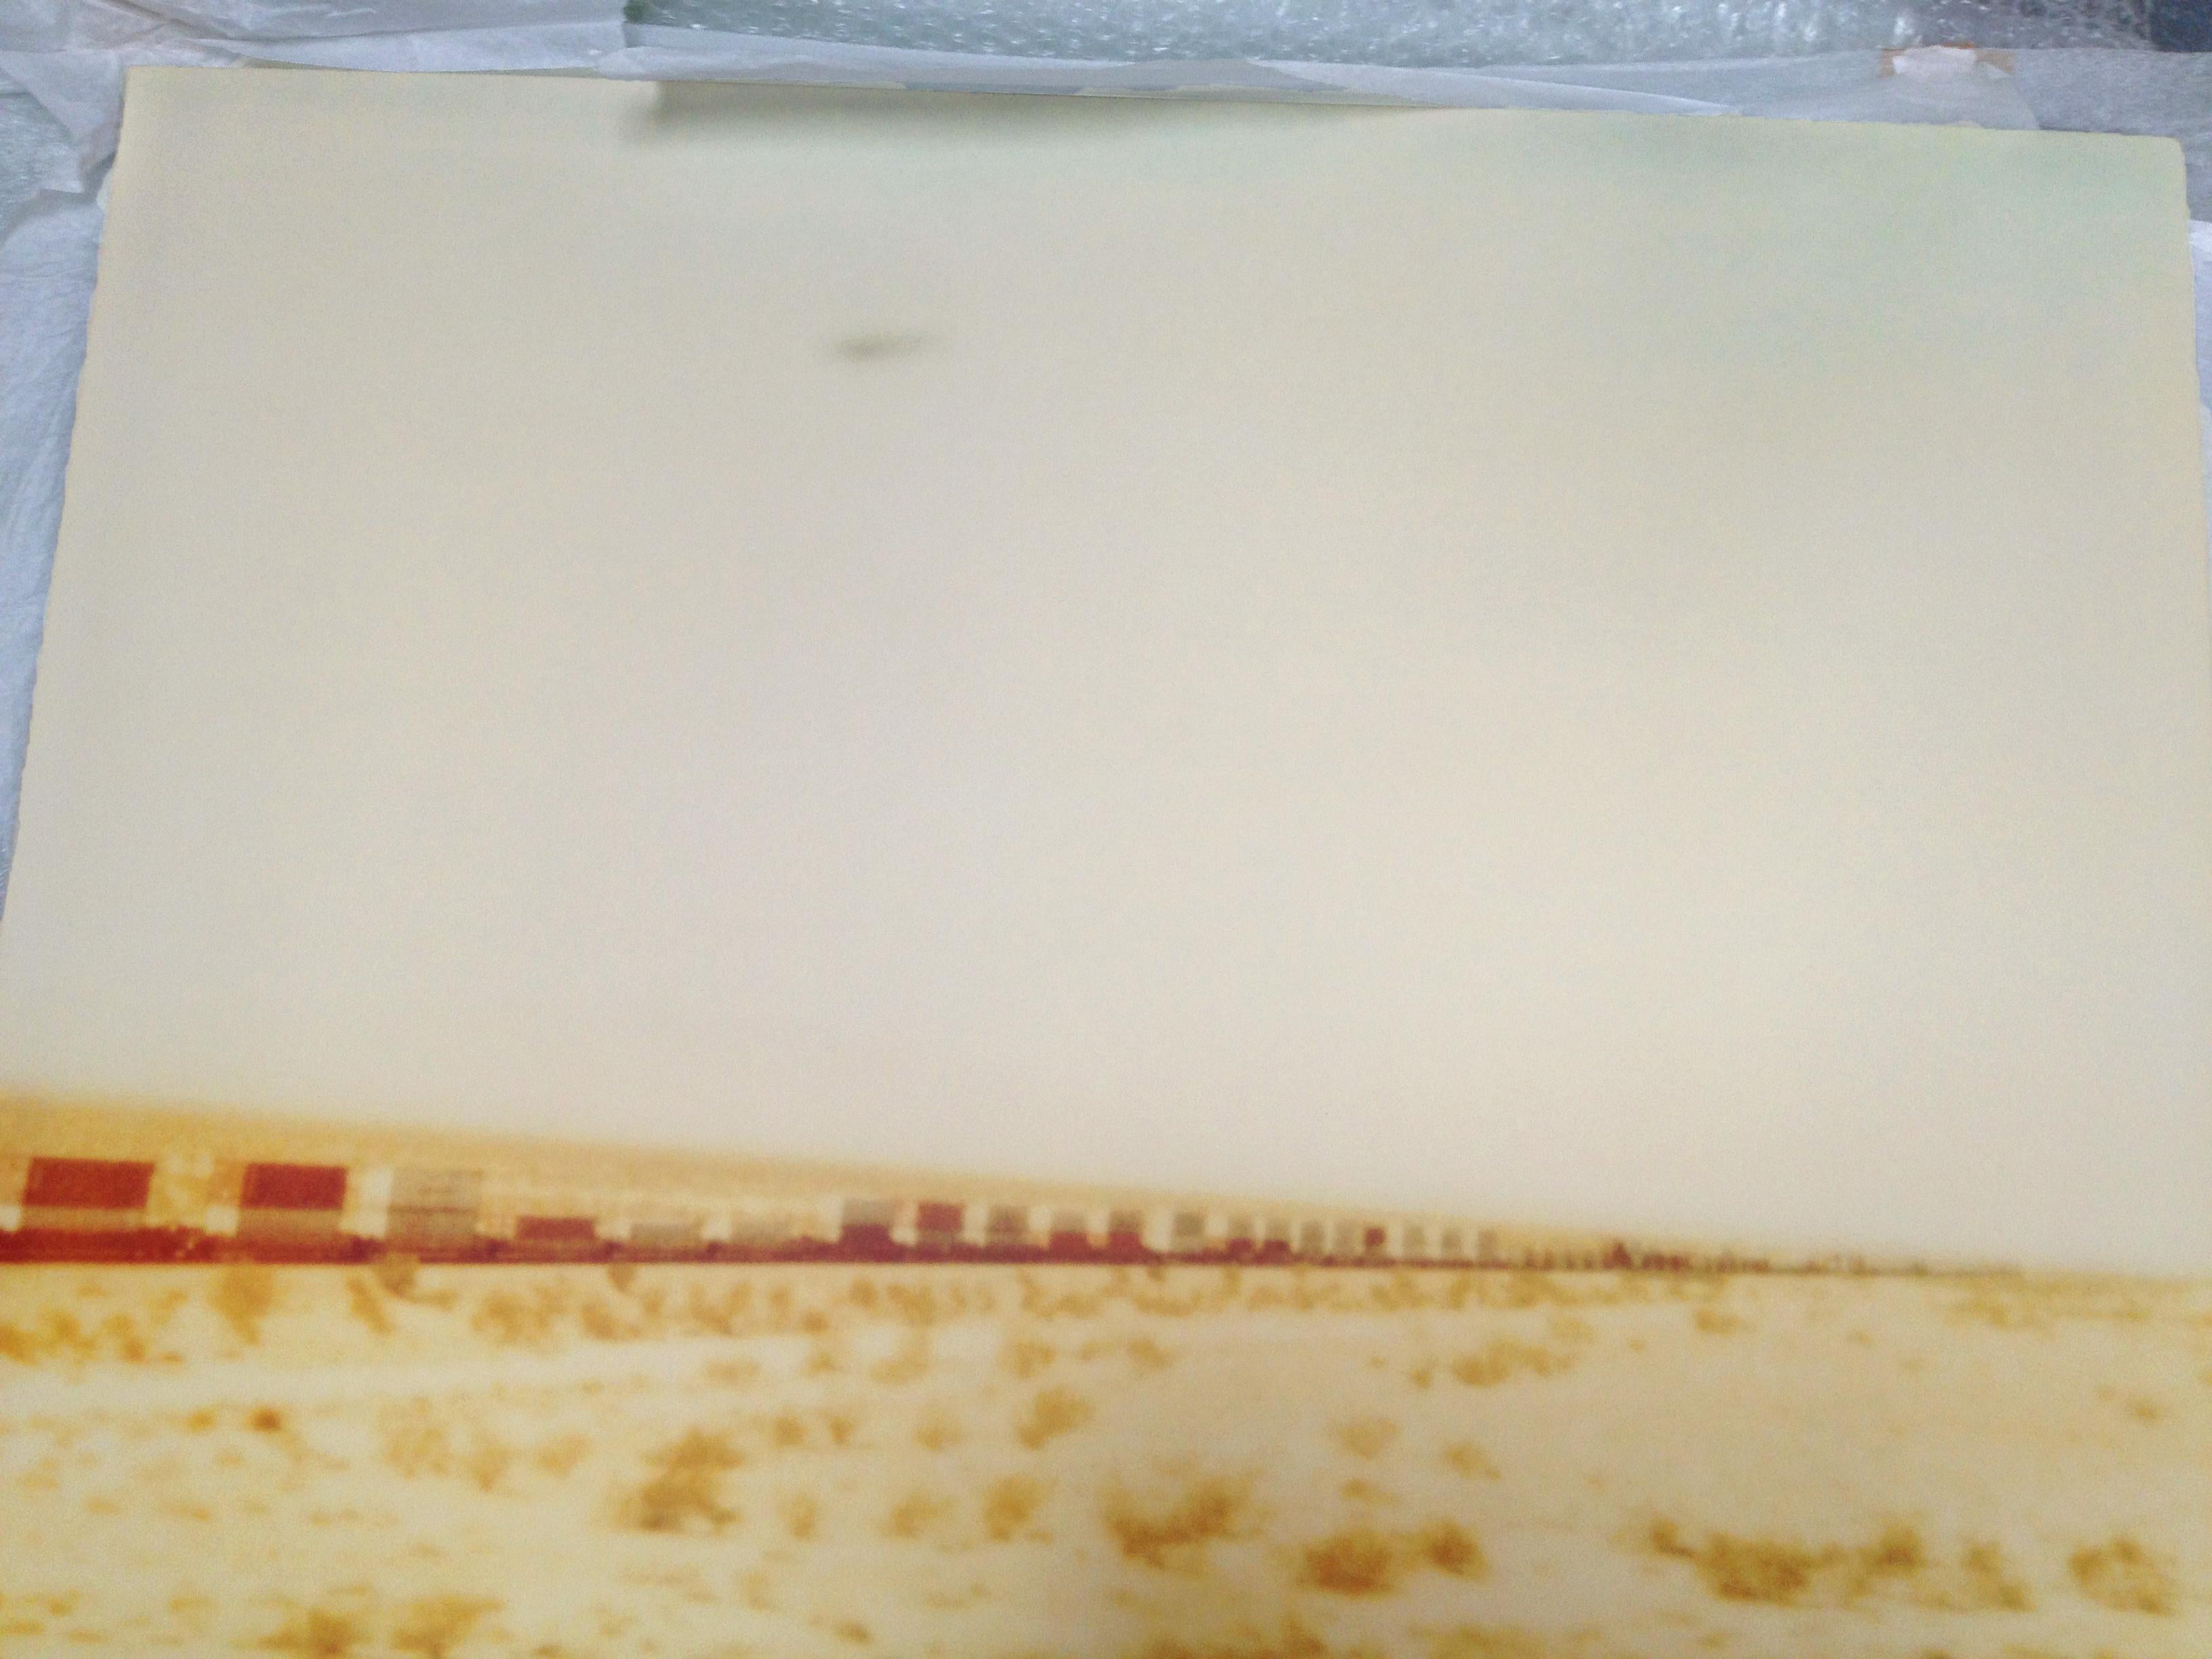 Train crosses Plain (Wastelands) - analoger Handdruck, montiert - Polaroid, Farbe (Zeitgenössisch), Photograph, von Stefanie Schneider